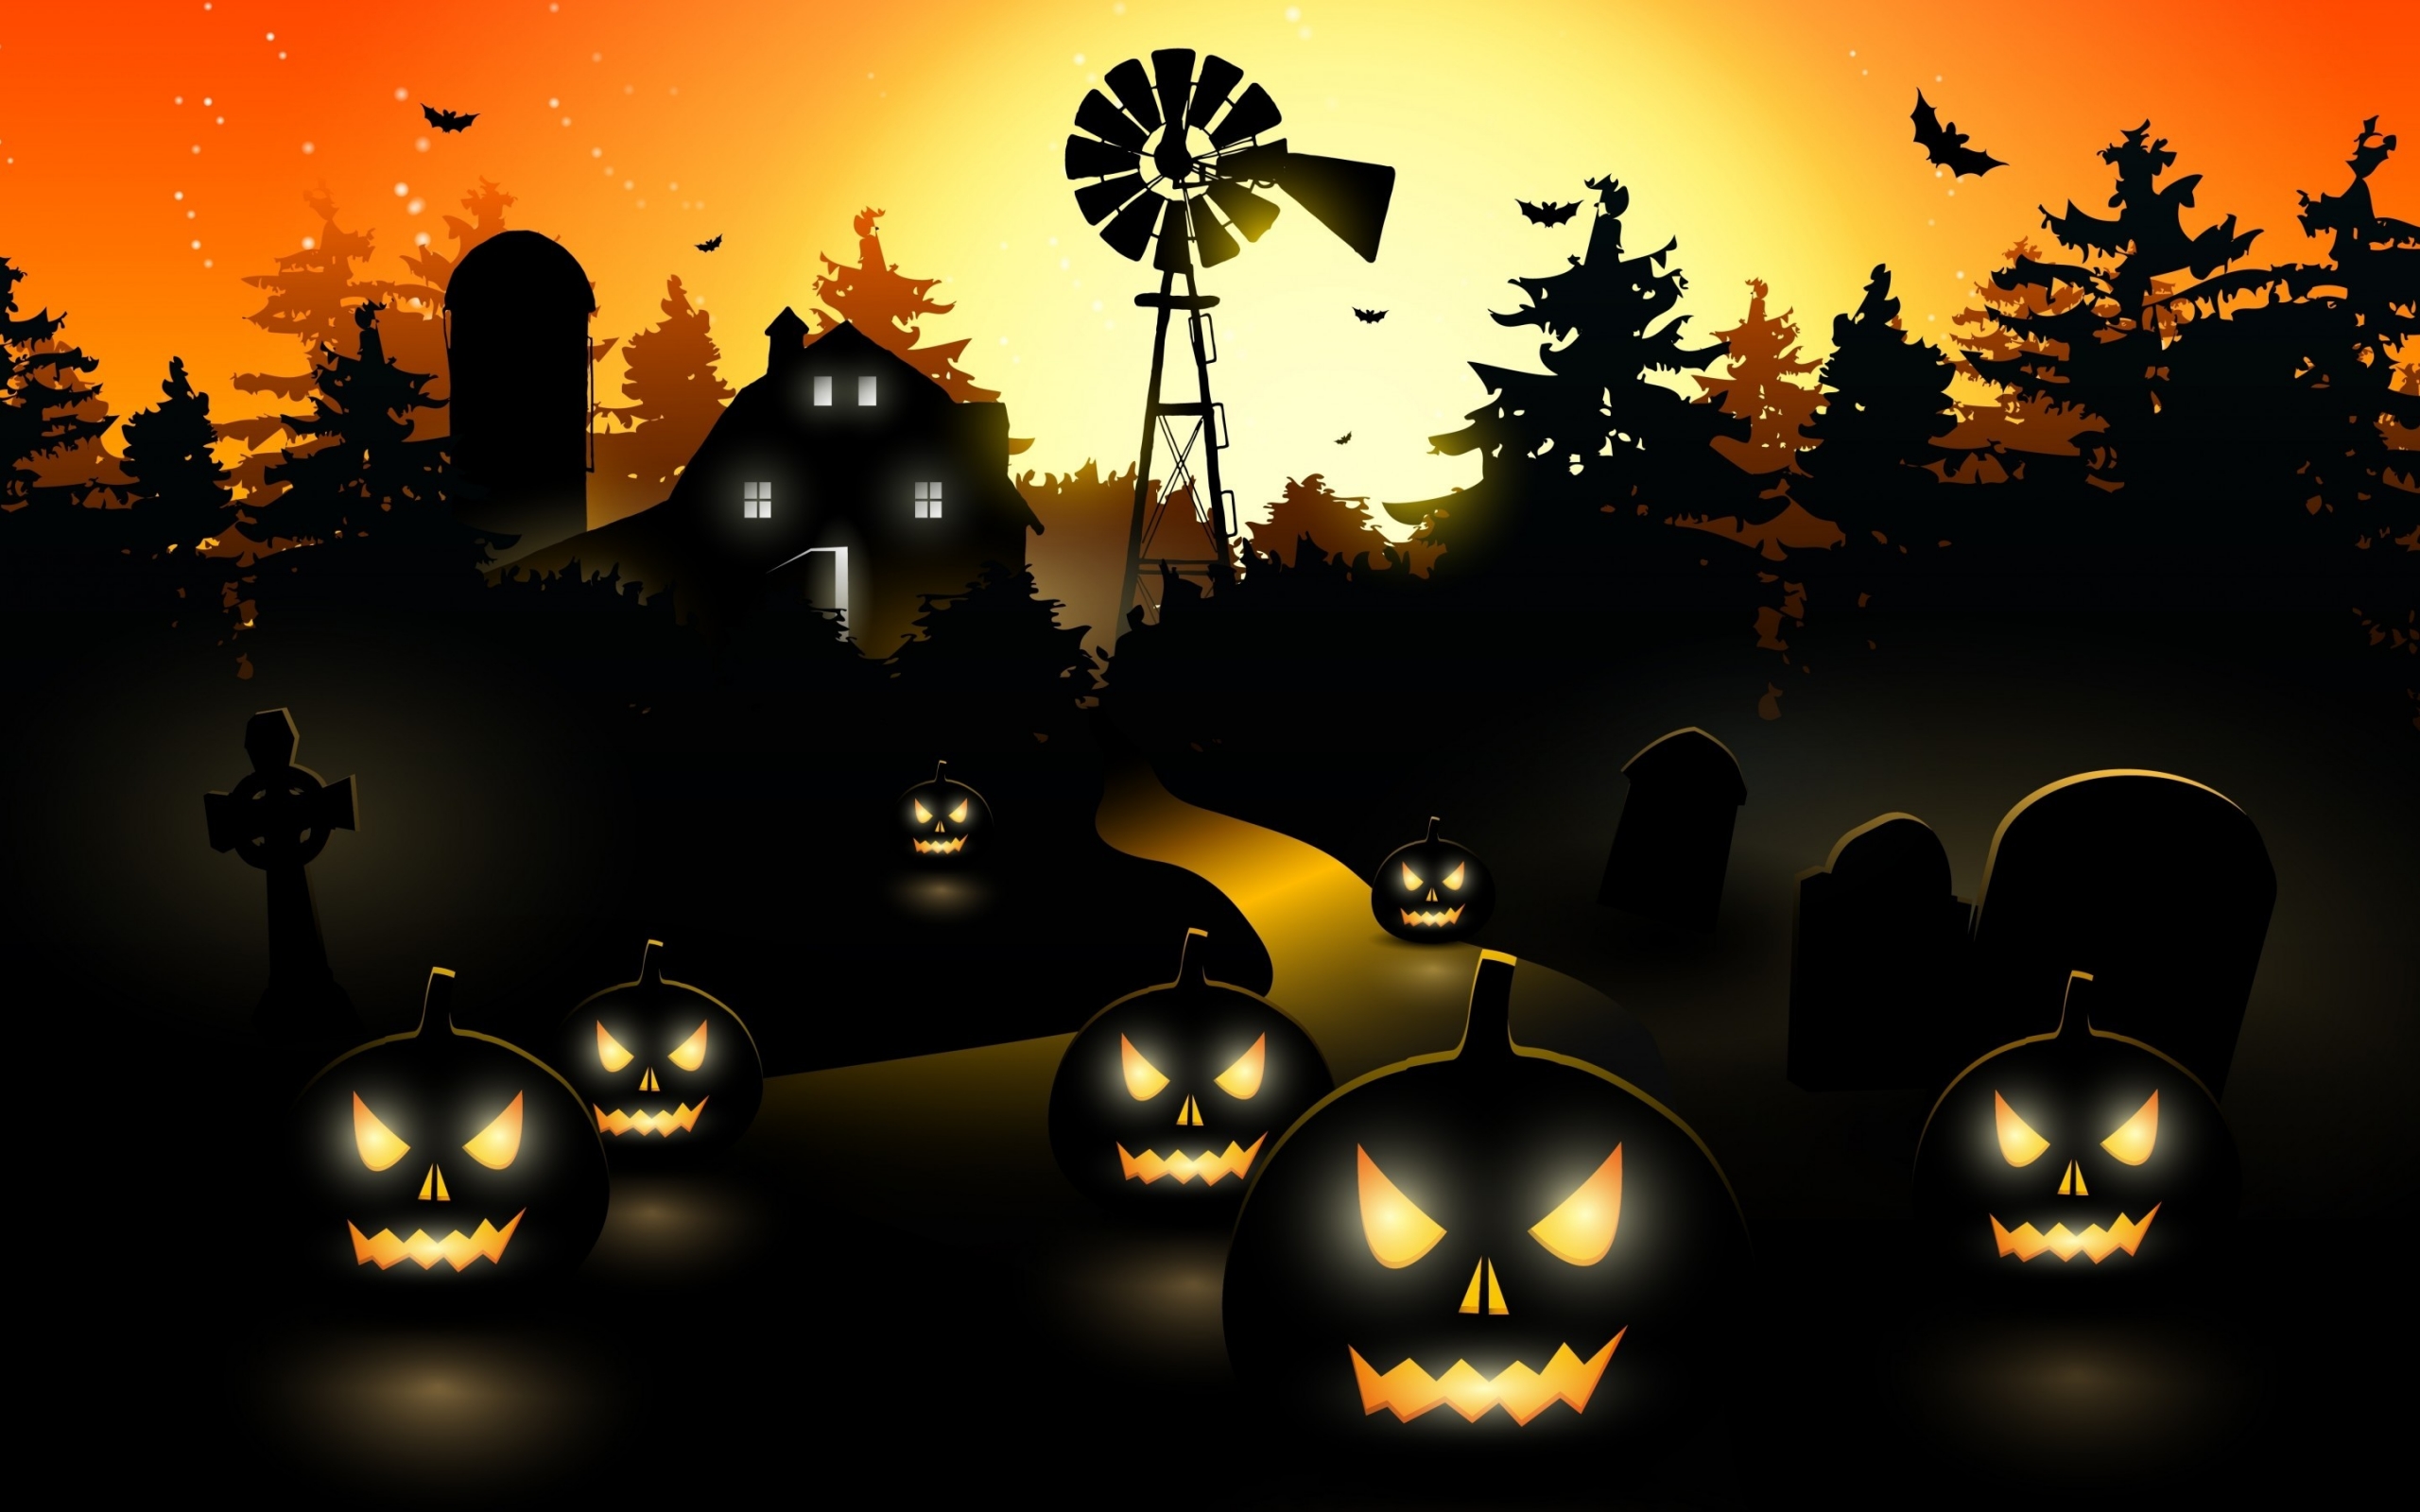 Halloween Black Pumpkins for 2560 x 1600 widescreen resolution